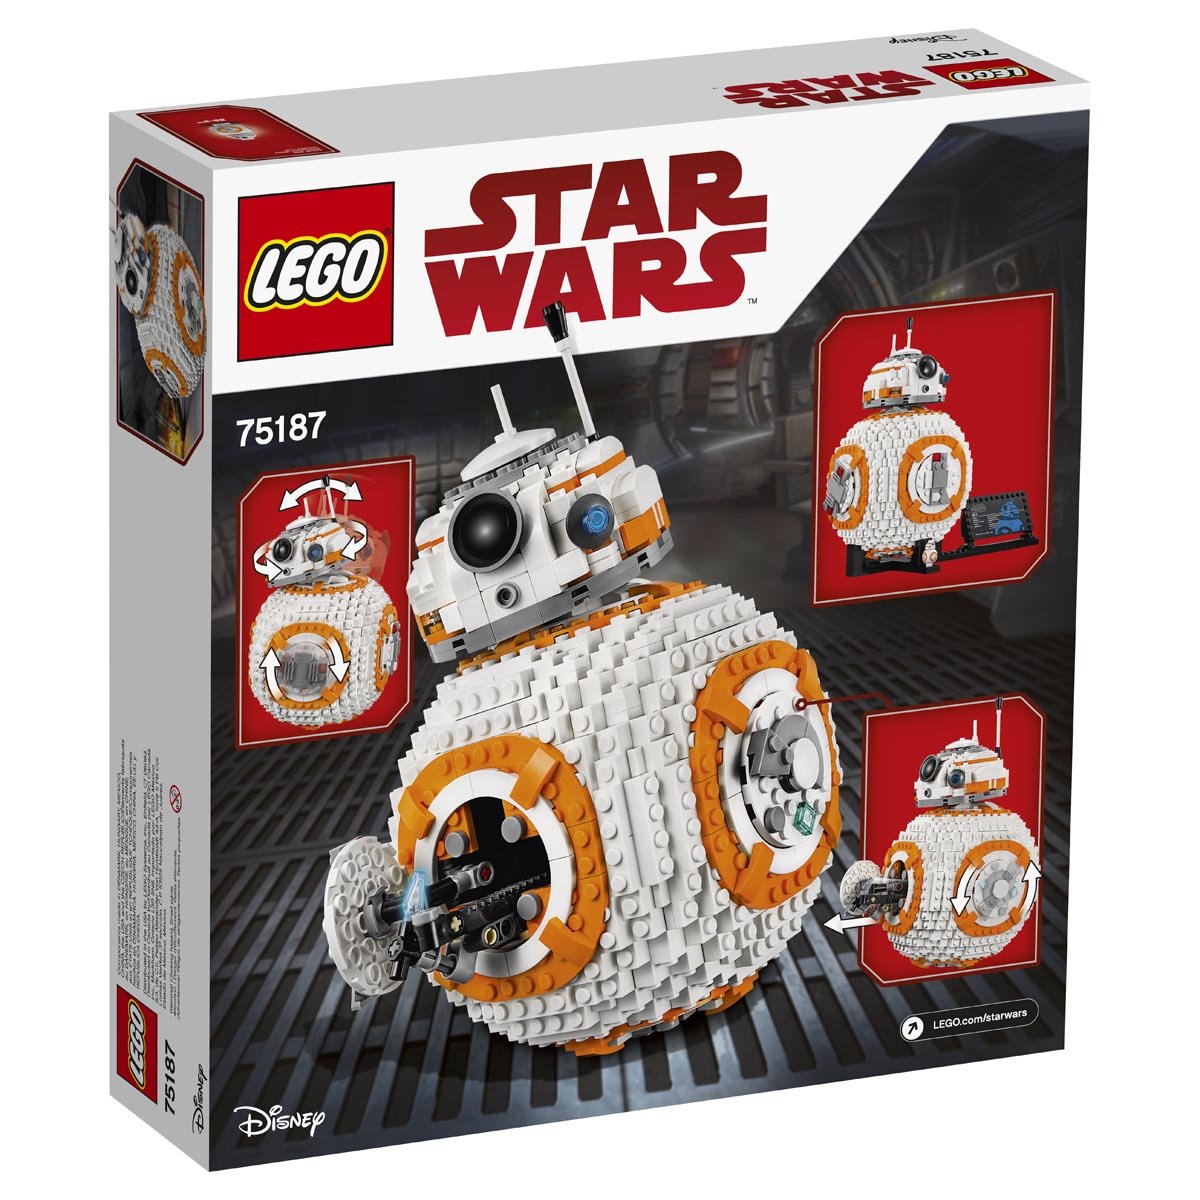 Star Wars Bb8 Lego